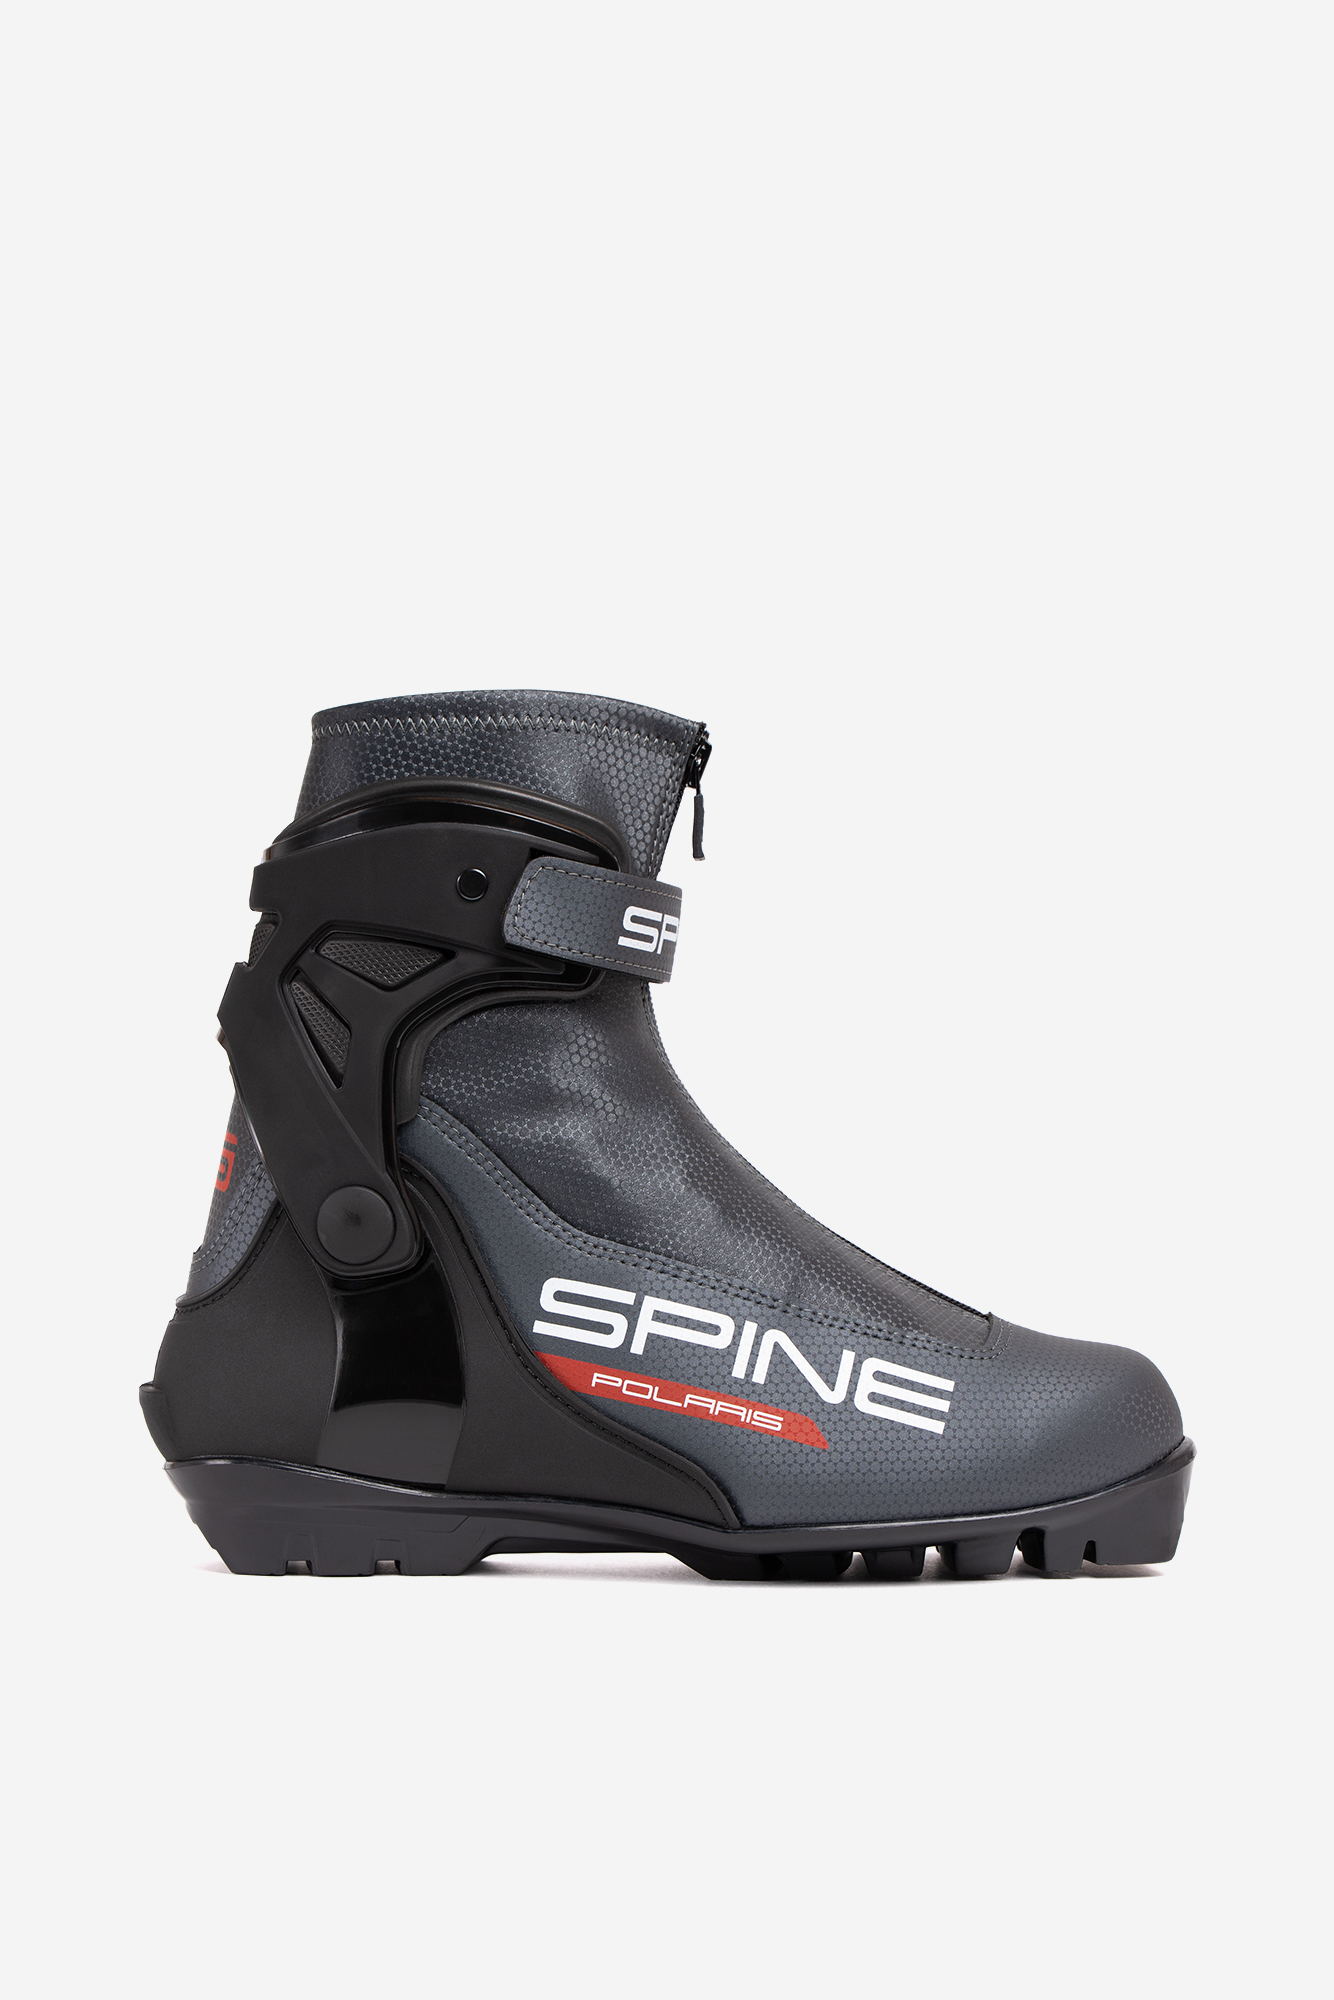 Лыжные ботинки SNS Spine Polaris (485-22) (черный) 1334_2000